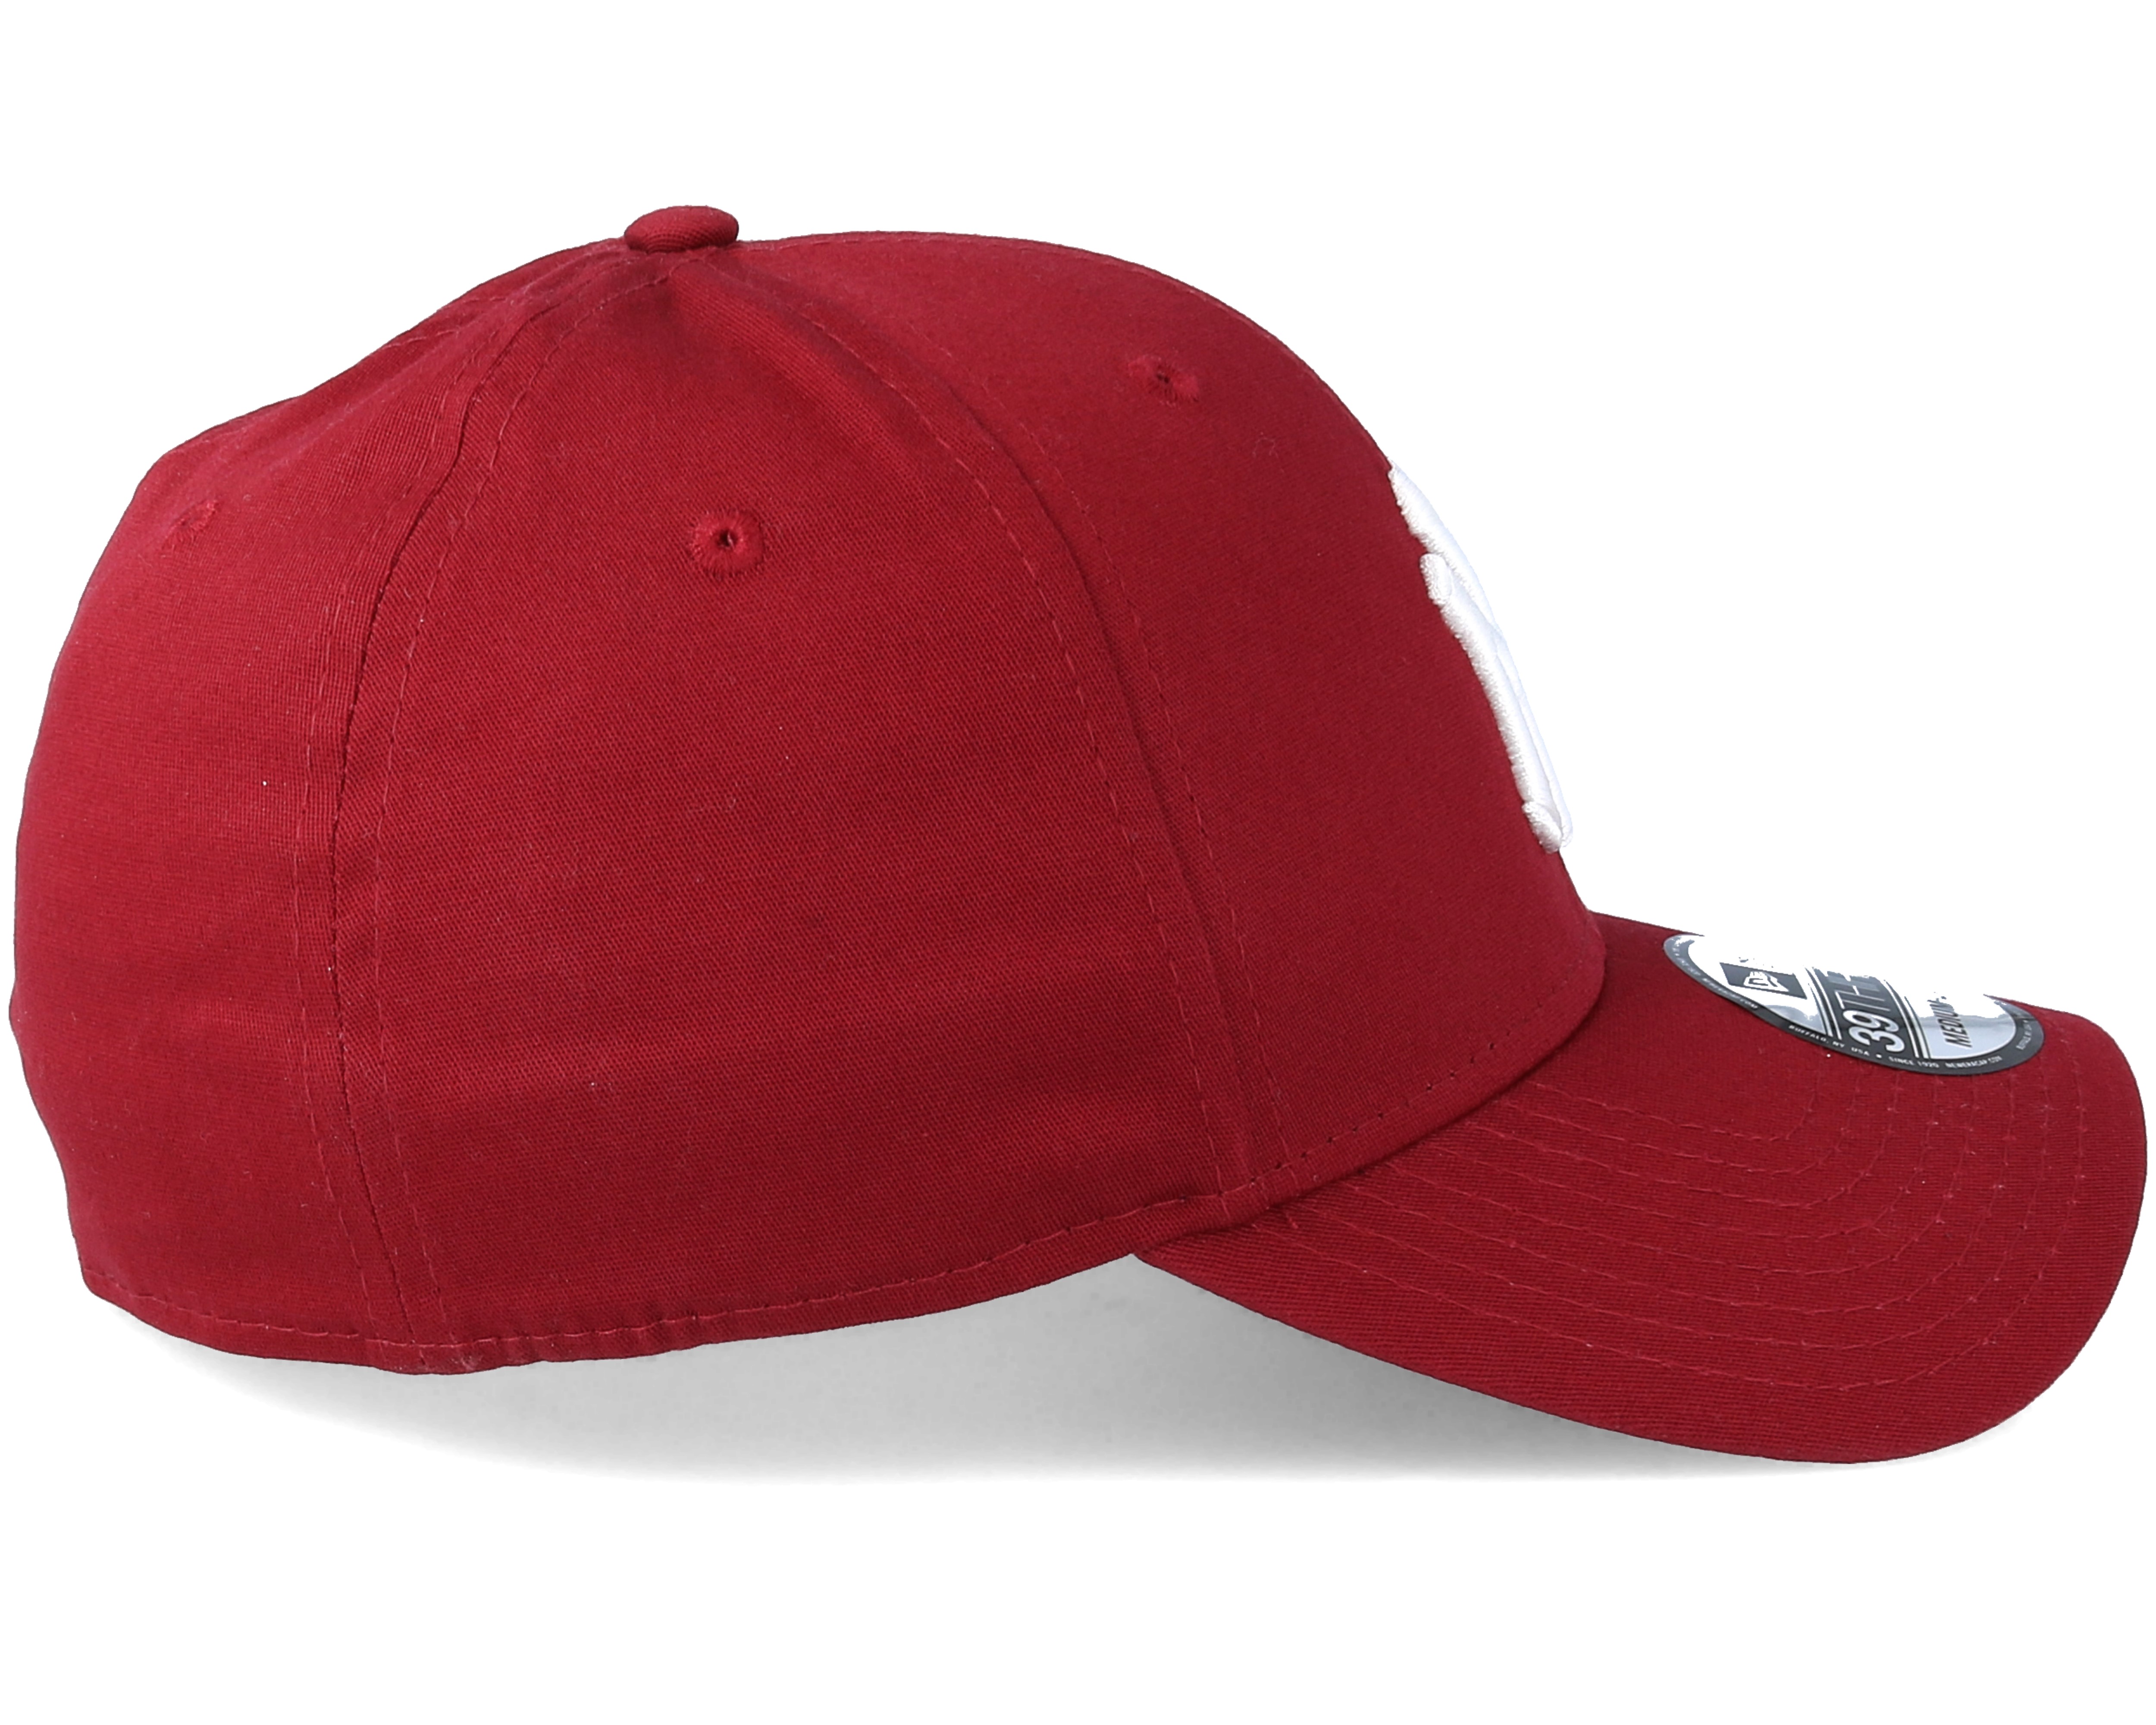 New York Yankees 39Thirty Red Flexfit - New Era caps - Hatstoreworld.com